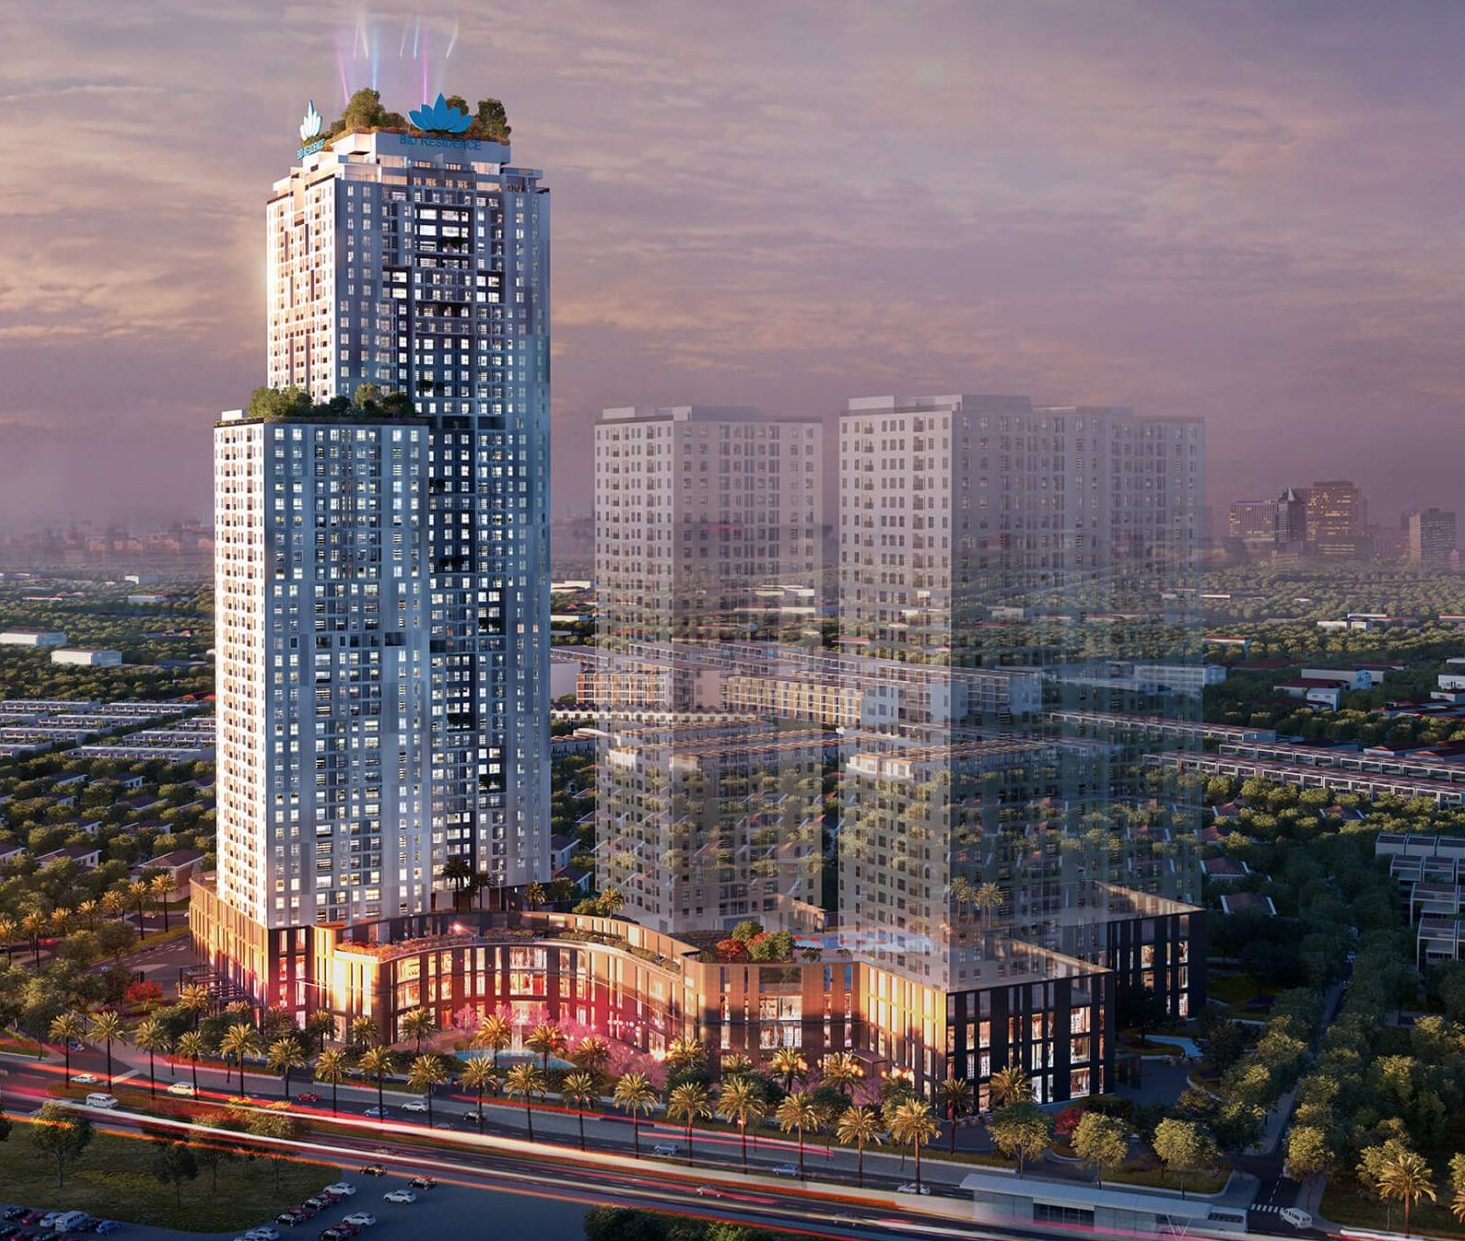 Quy mô khủng của dự án căn hộ Bid Residences Hà Nội